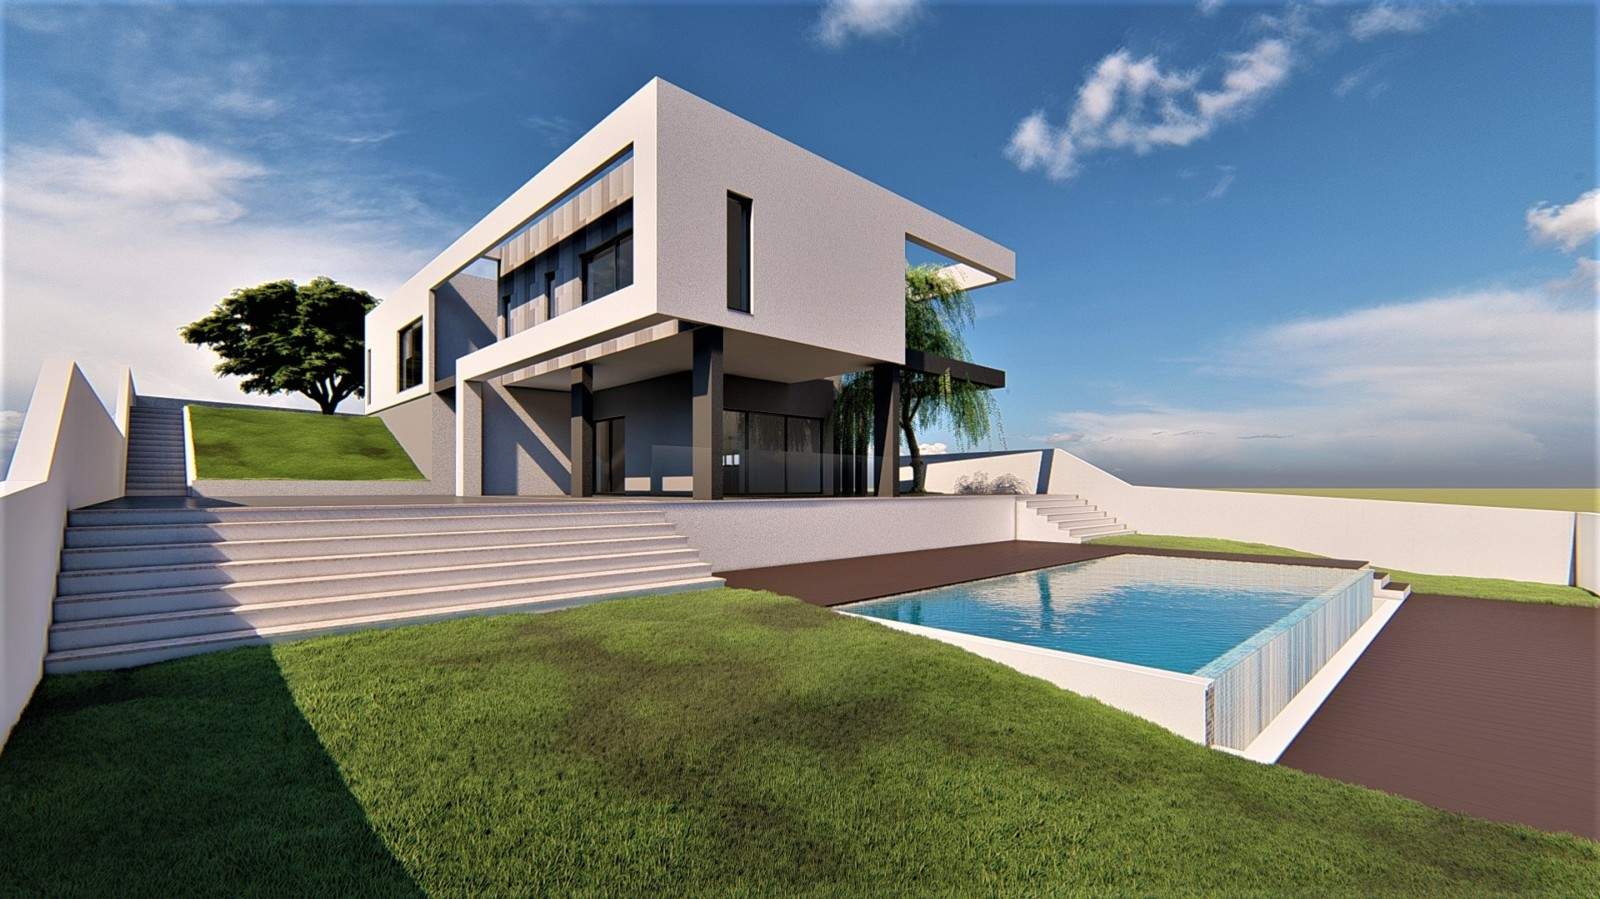 Villa de 3 dormitorios en construcción en venta, en Vilamoura, Algarve_213464